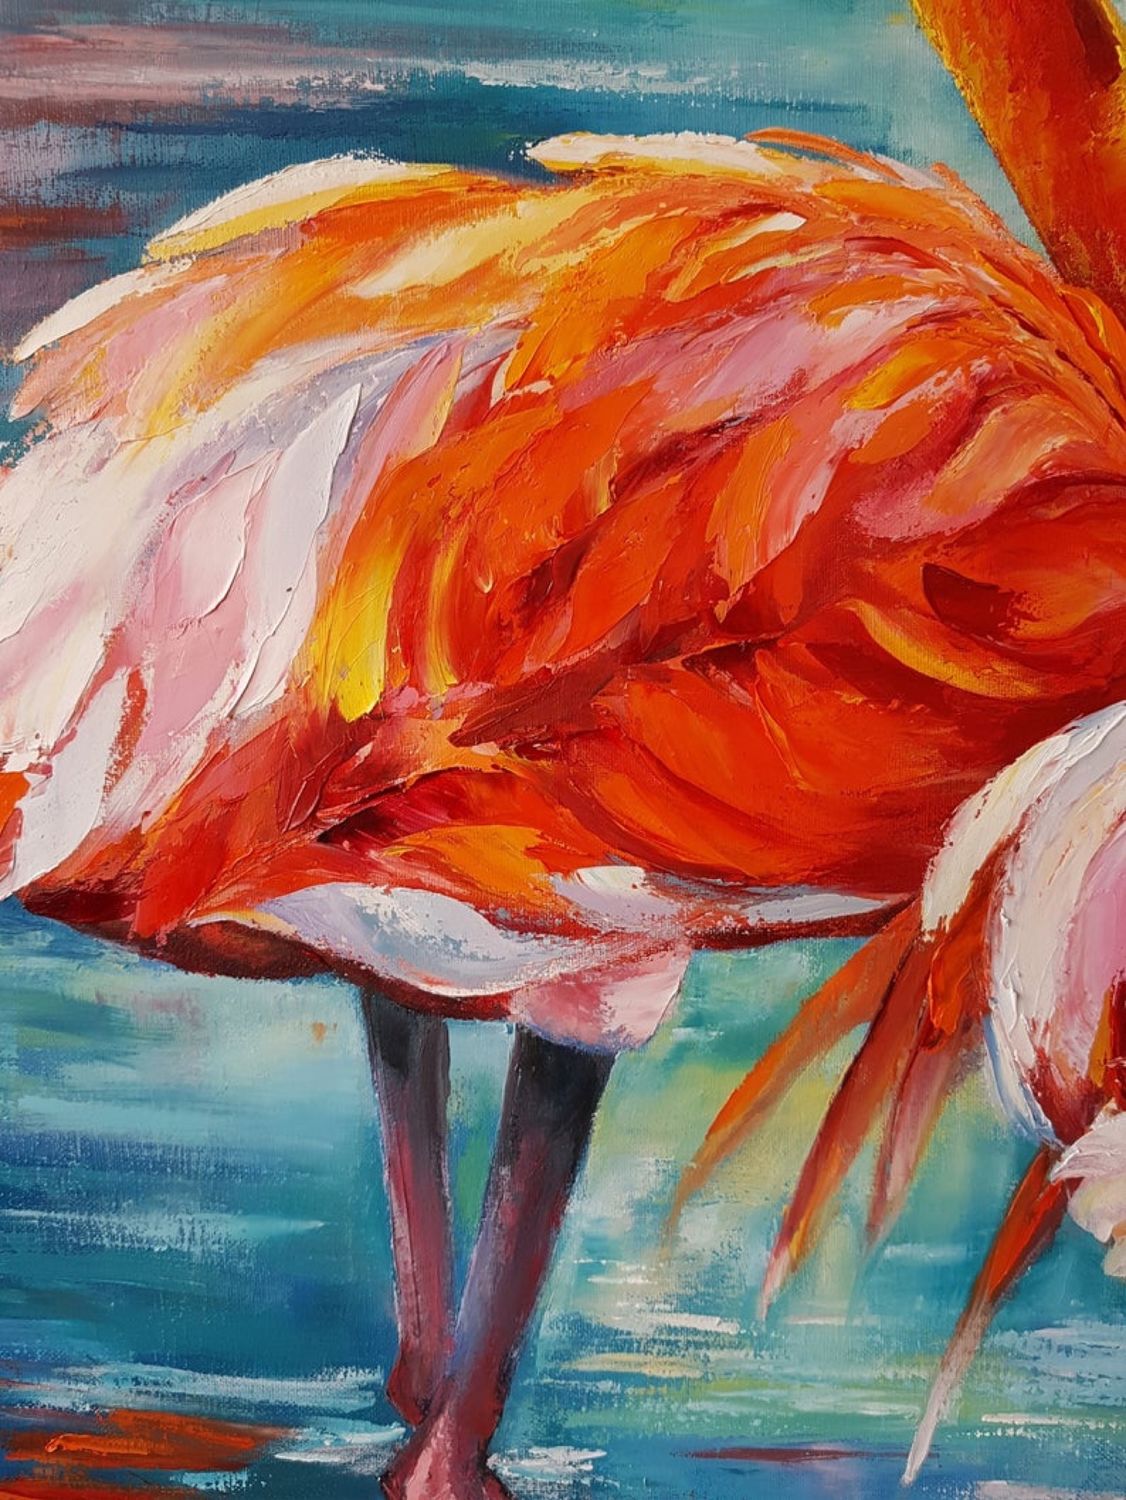 Интерьерная картина Фламинго